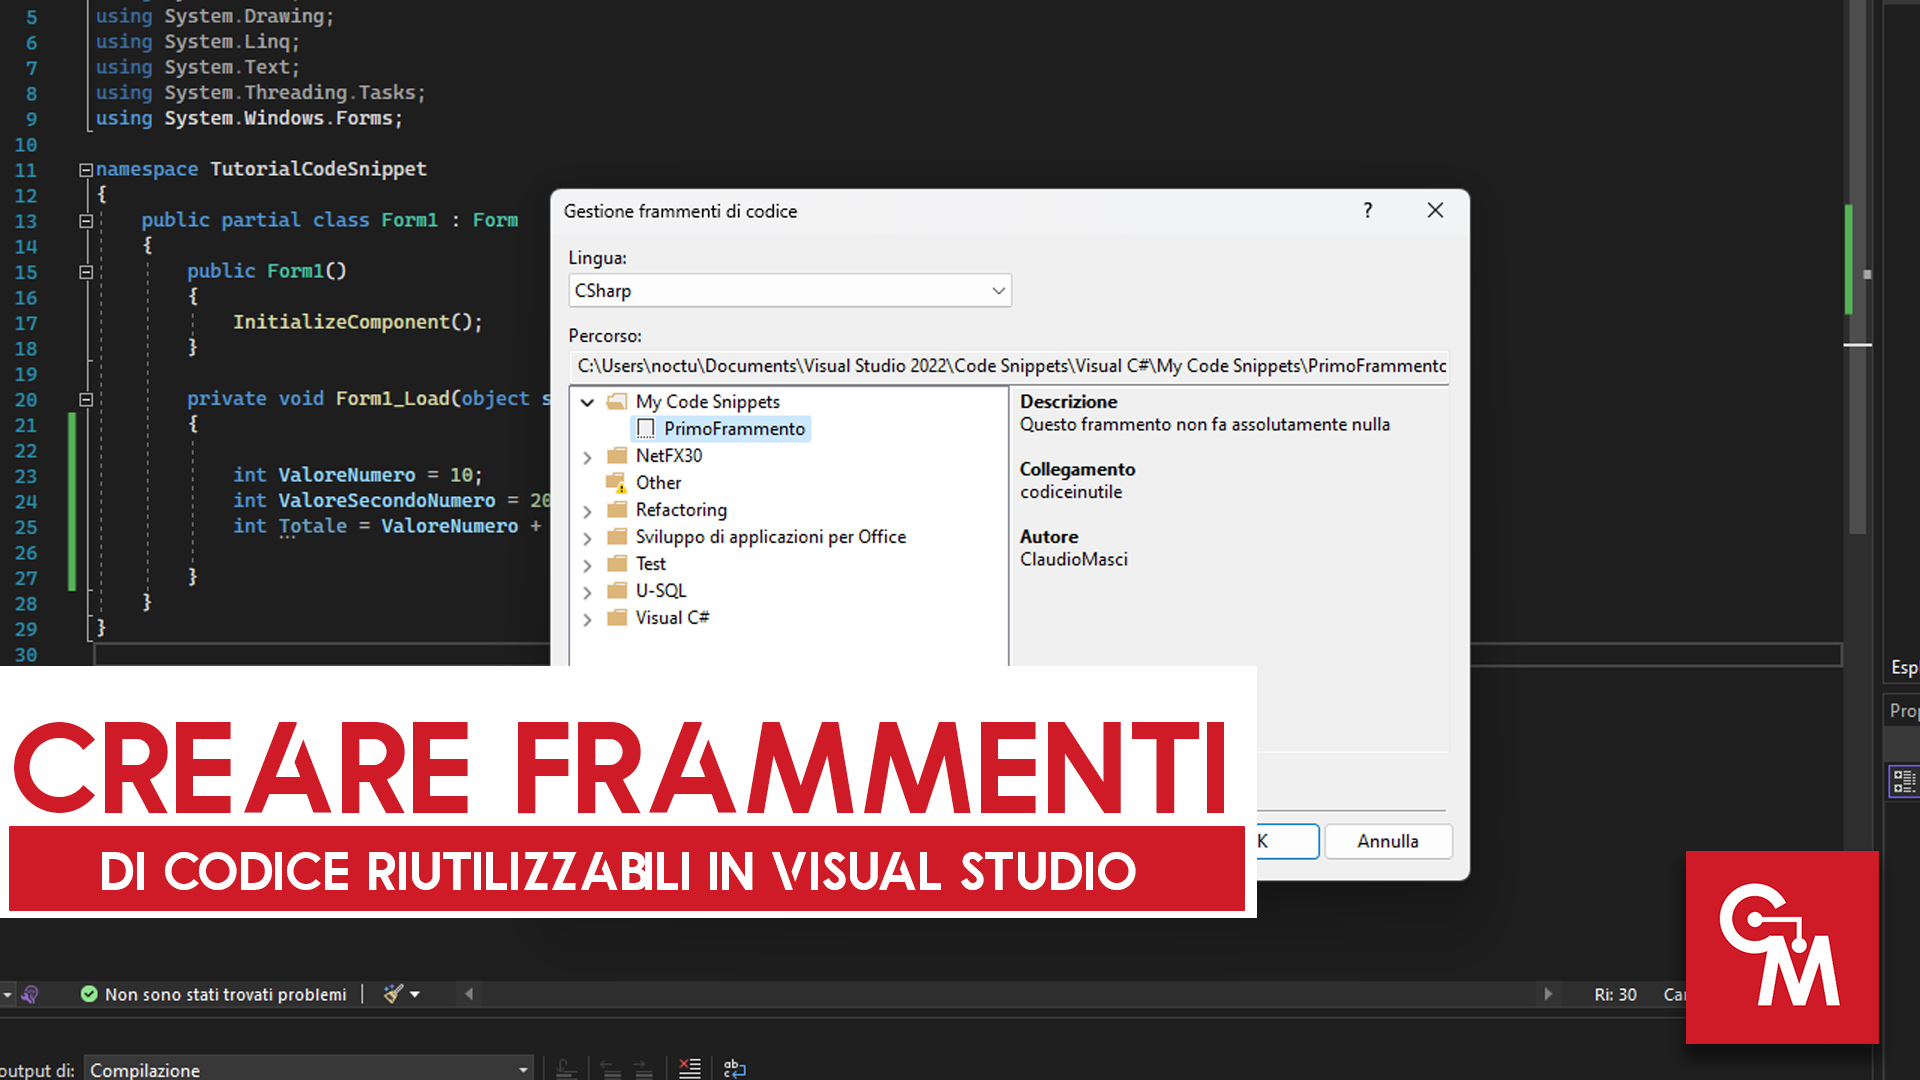 Come creare frammenti di codice riutilizzabili in Visual Studio